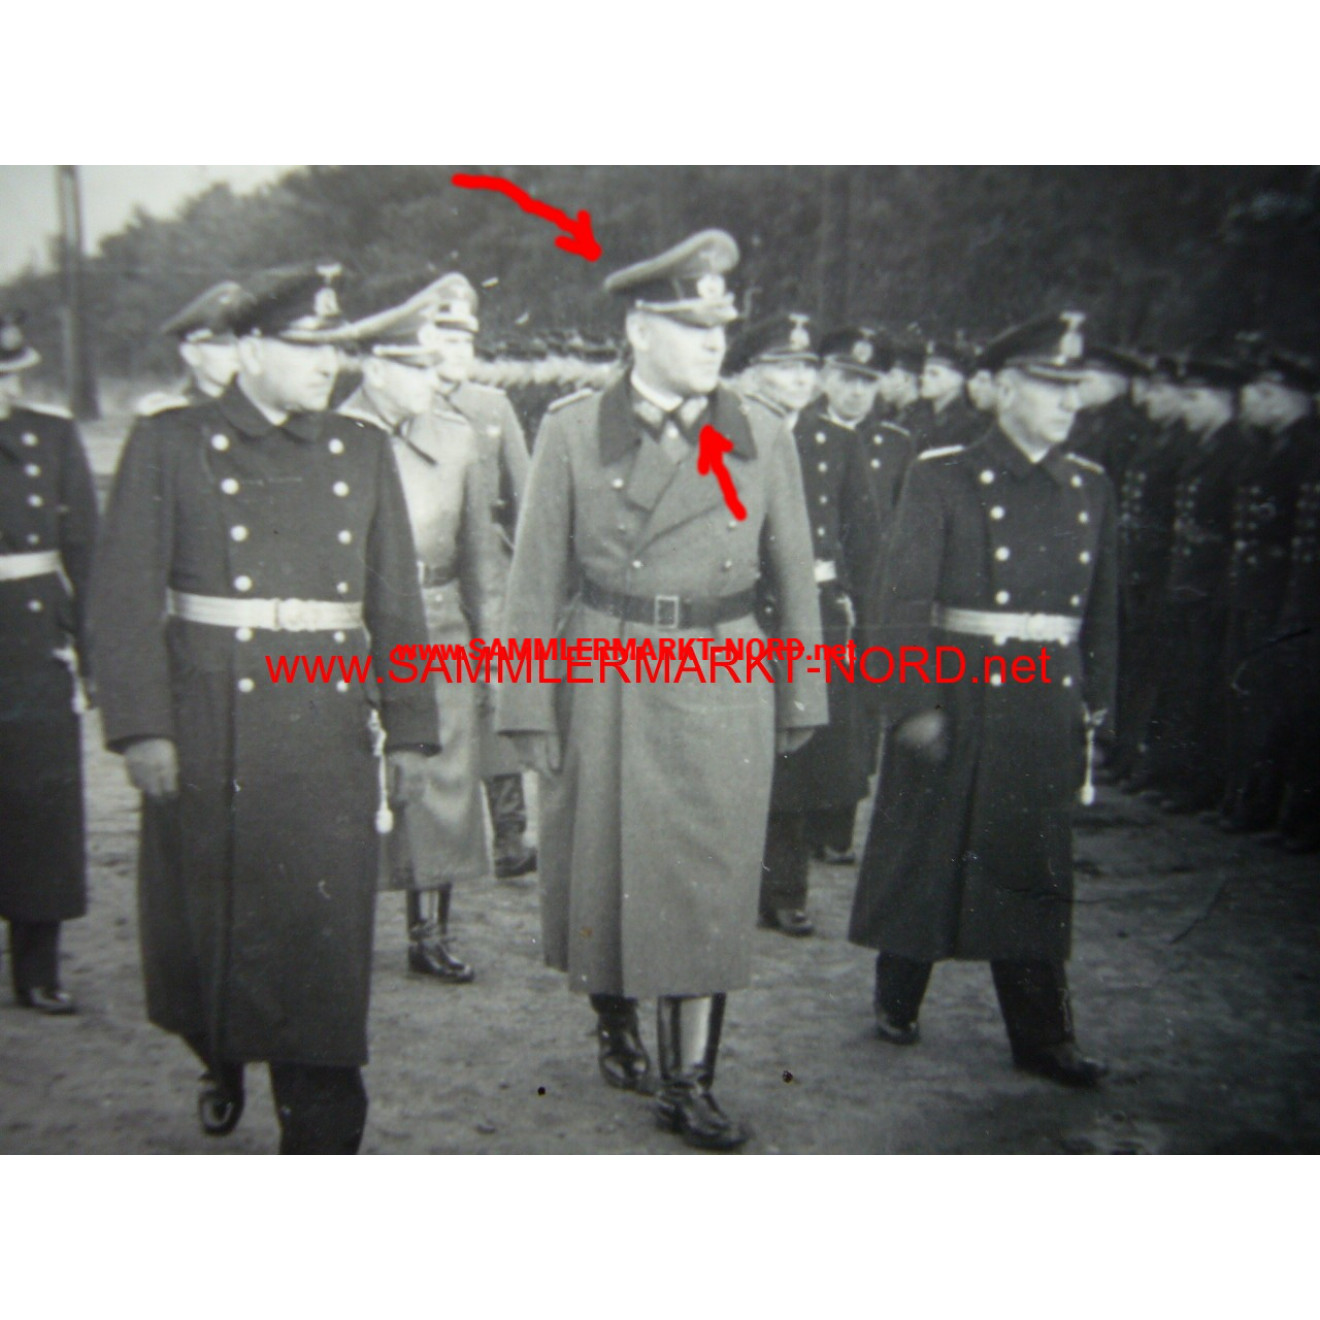 Wehrmacht General von Hoffmann bei der Marine